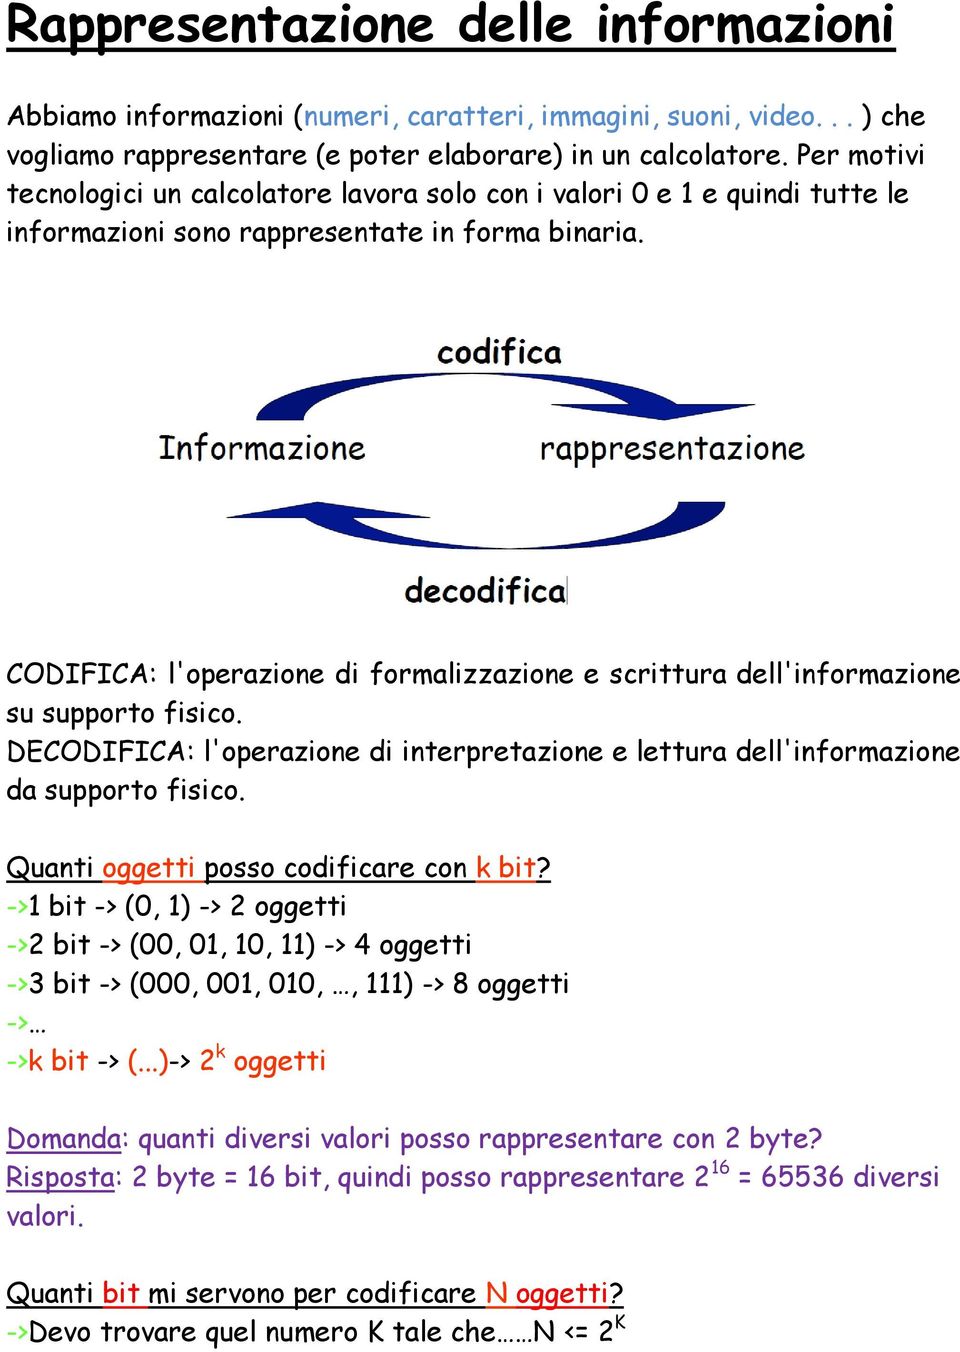 CODIFICA: l'operazione di formalizzazione e scrittura dell'informazione su supporto fisico. DECODIFICA: l'operazione di interpretazione e lettura dell'informazione da supporto fisico.